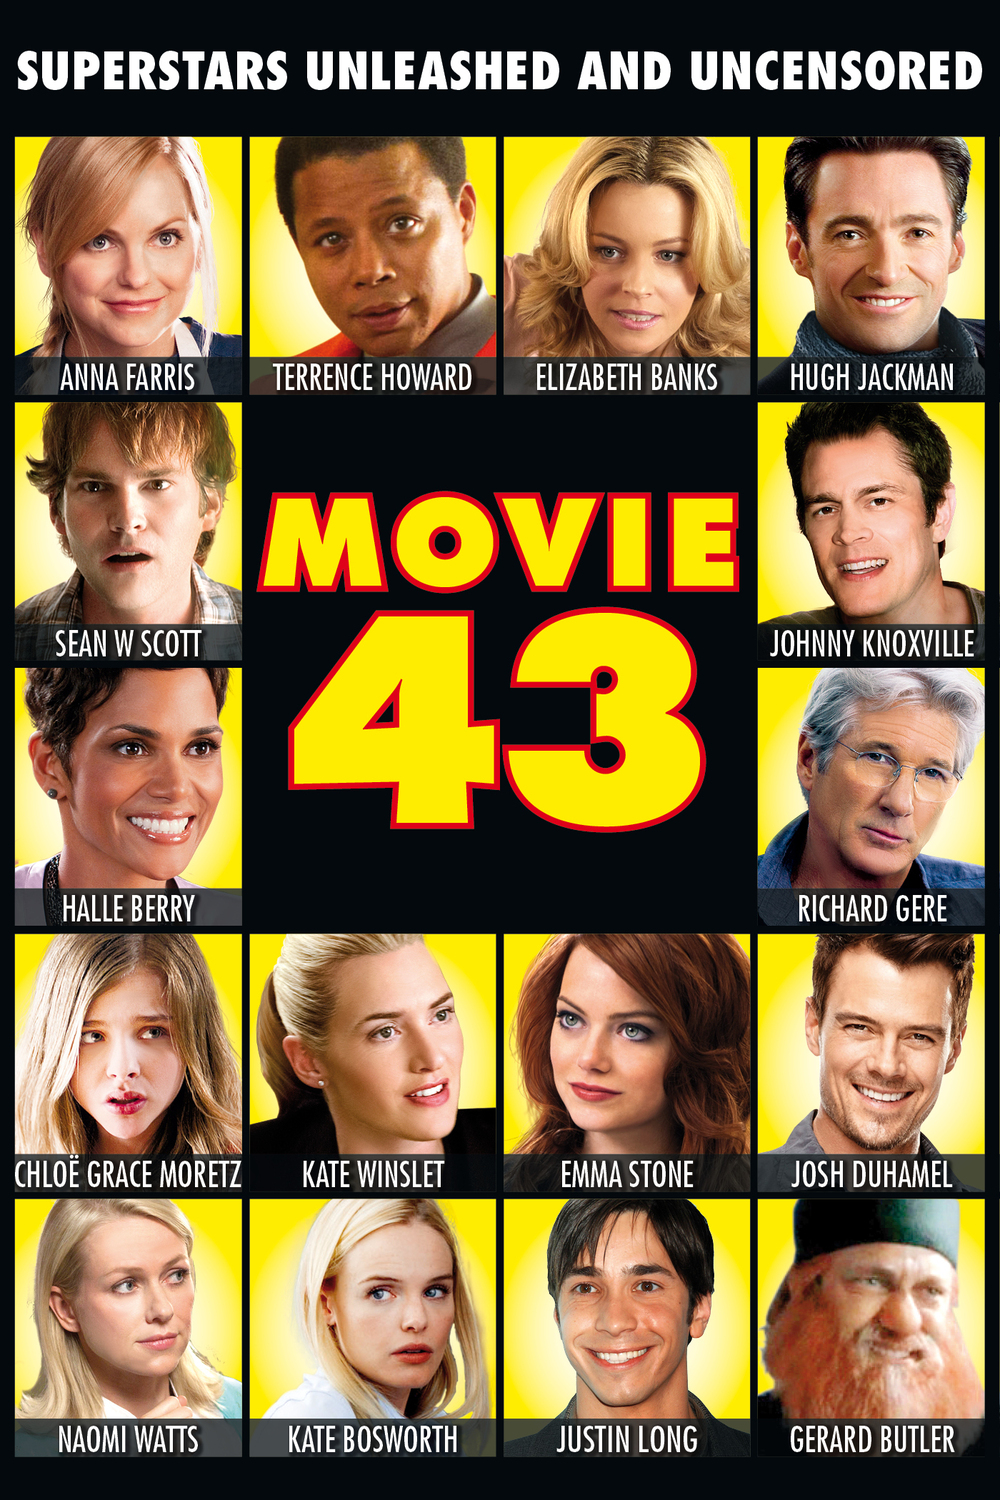 2013 Movie 43